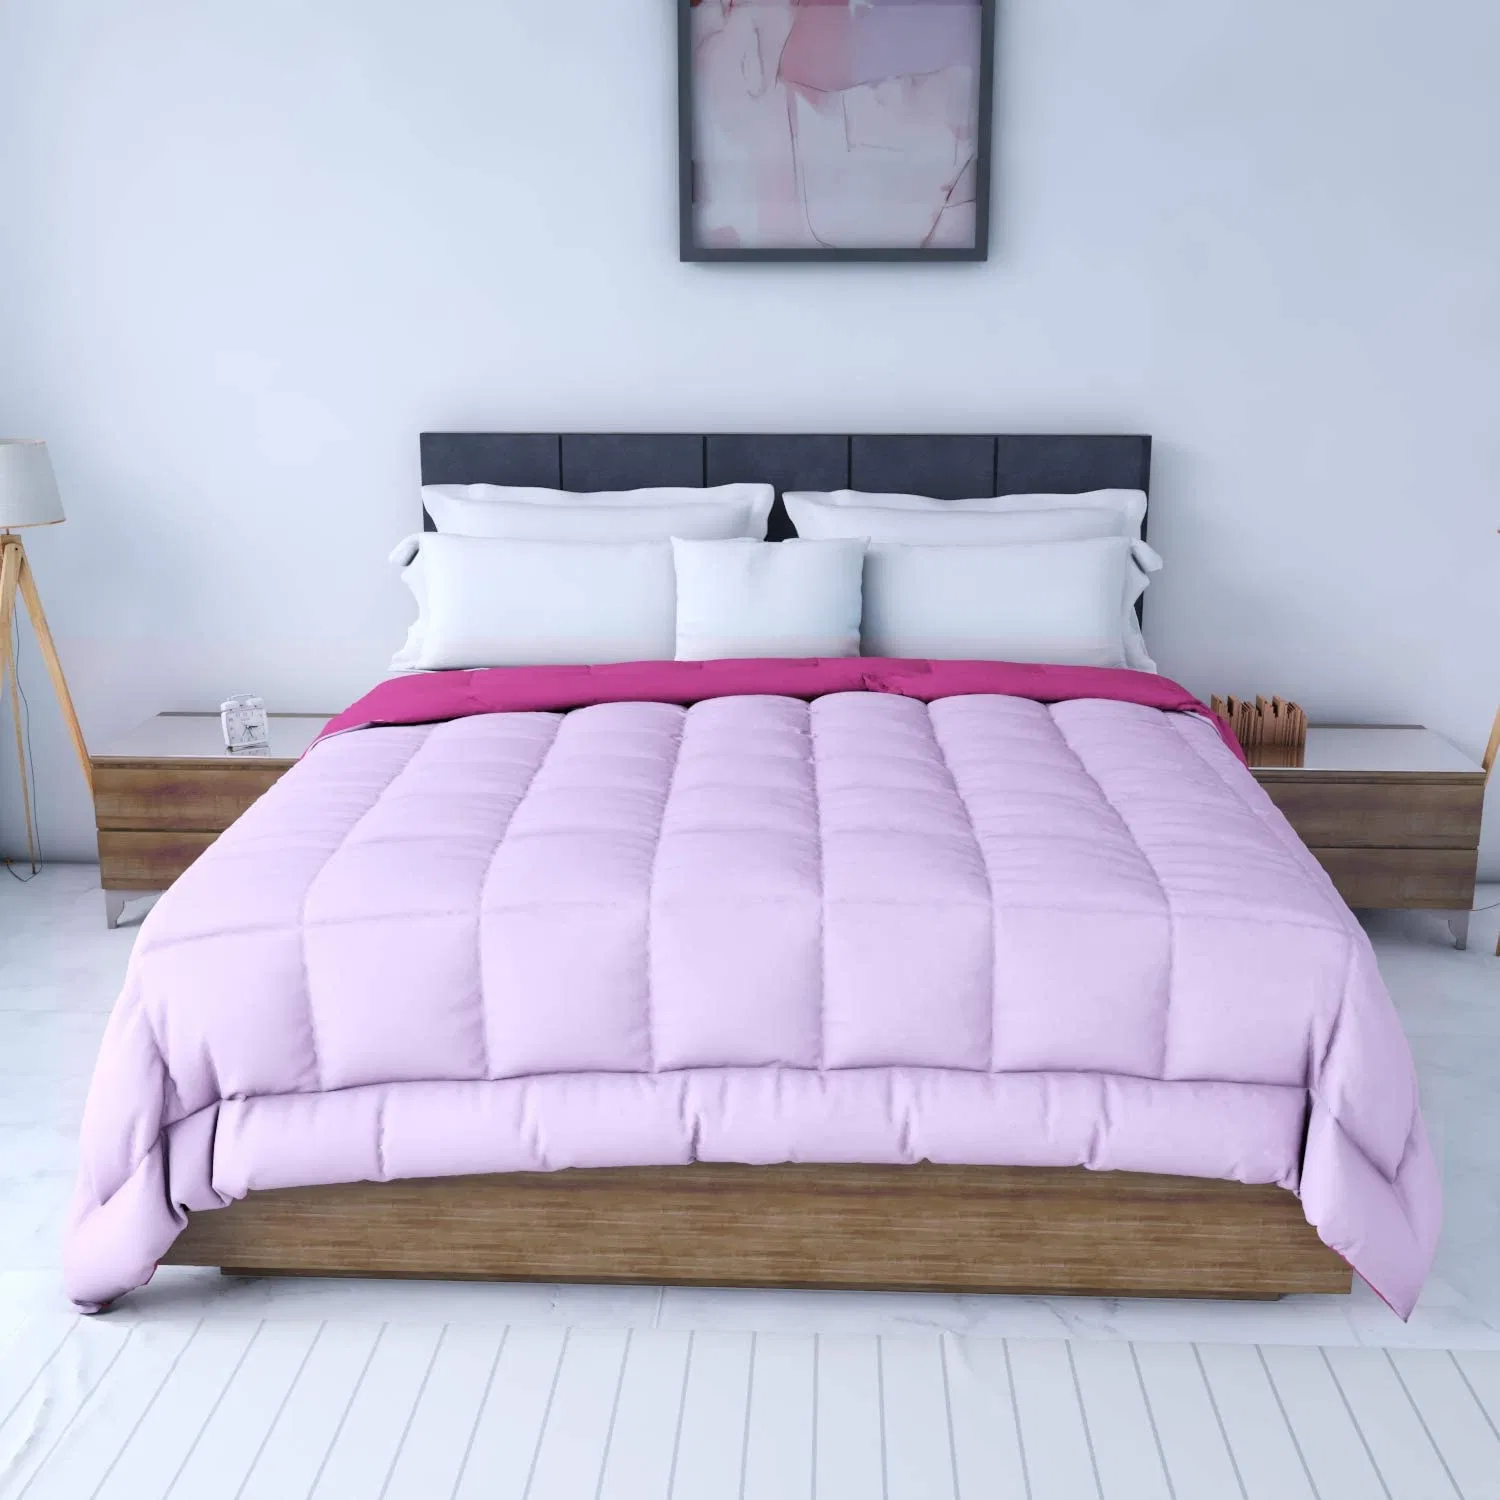 China proveedor mayorista Fabricante de ropa de cama de calidad de lujo, se establece el edredón de microfibra bicolor